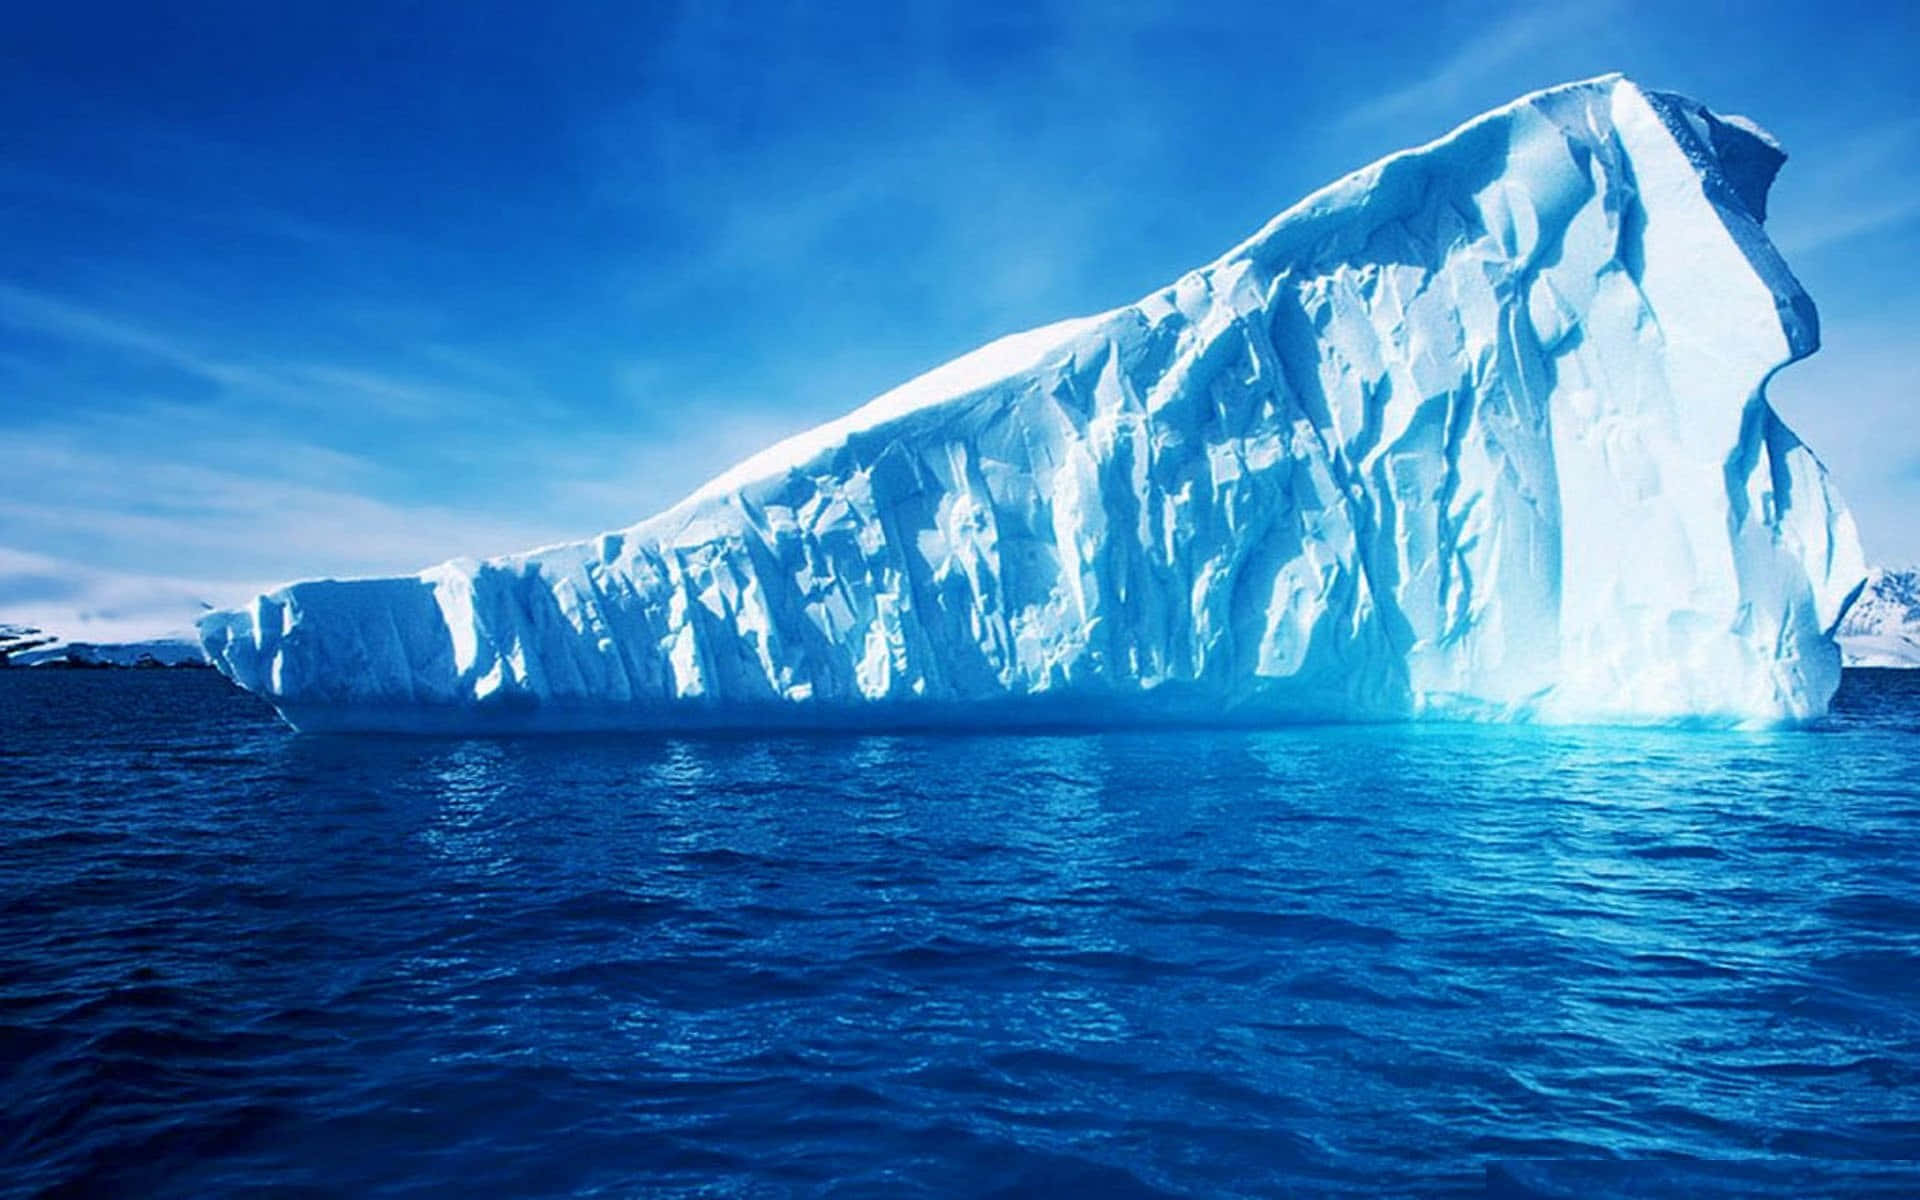 Majestic Iceberg on a Frozen Ocean Wallpaper